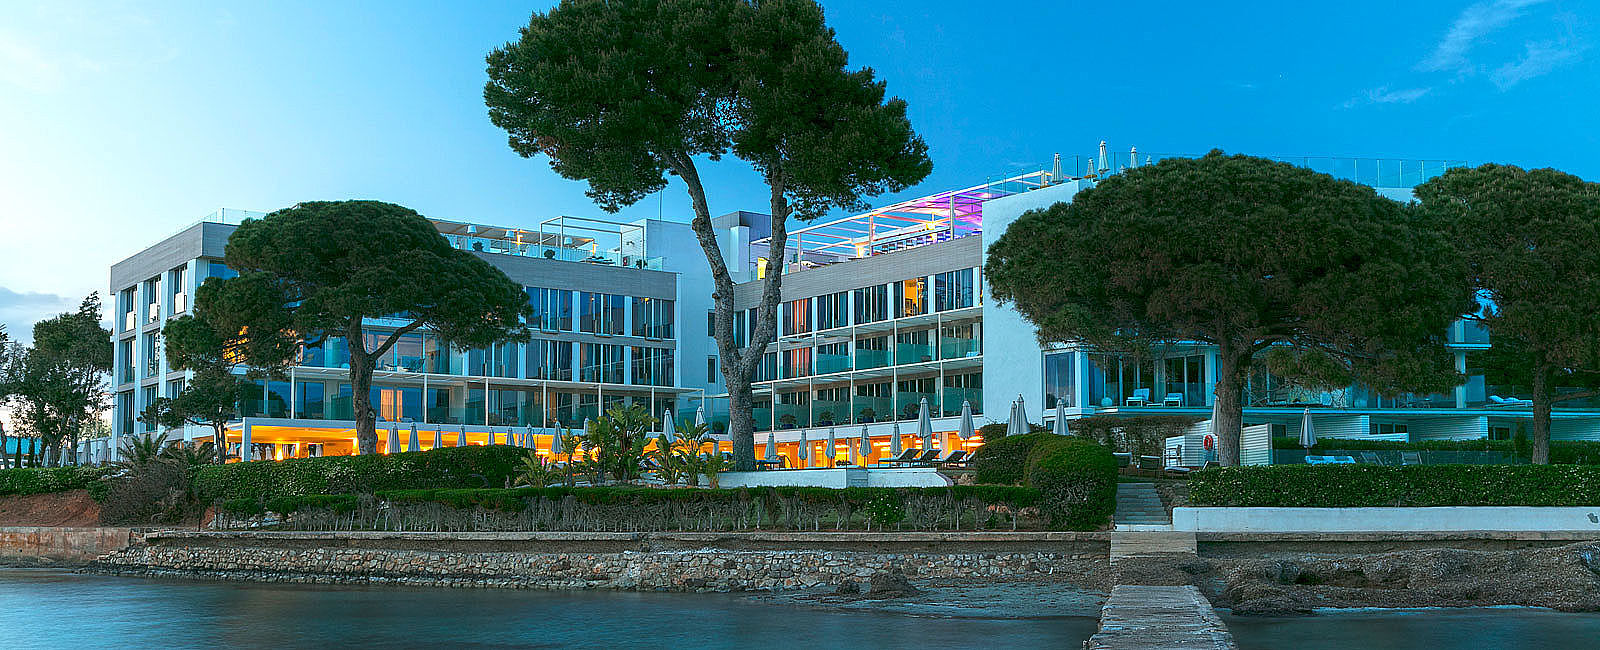 HOTEL ANGEBOTE
 ME Ibiza: 4 für 3 
